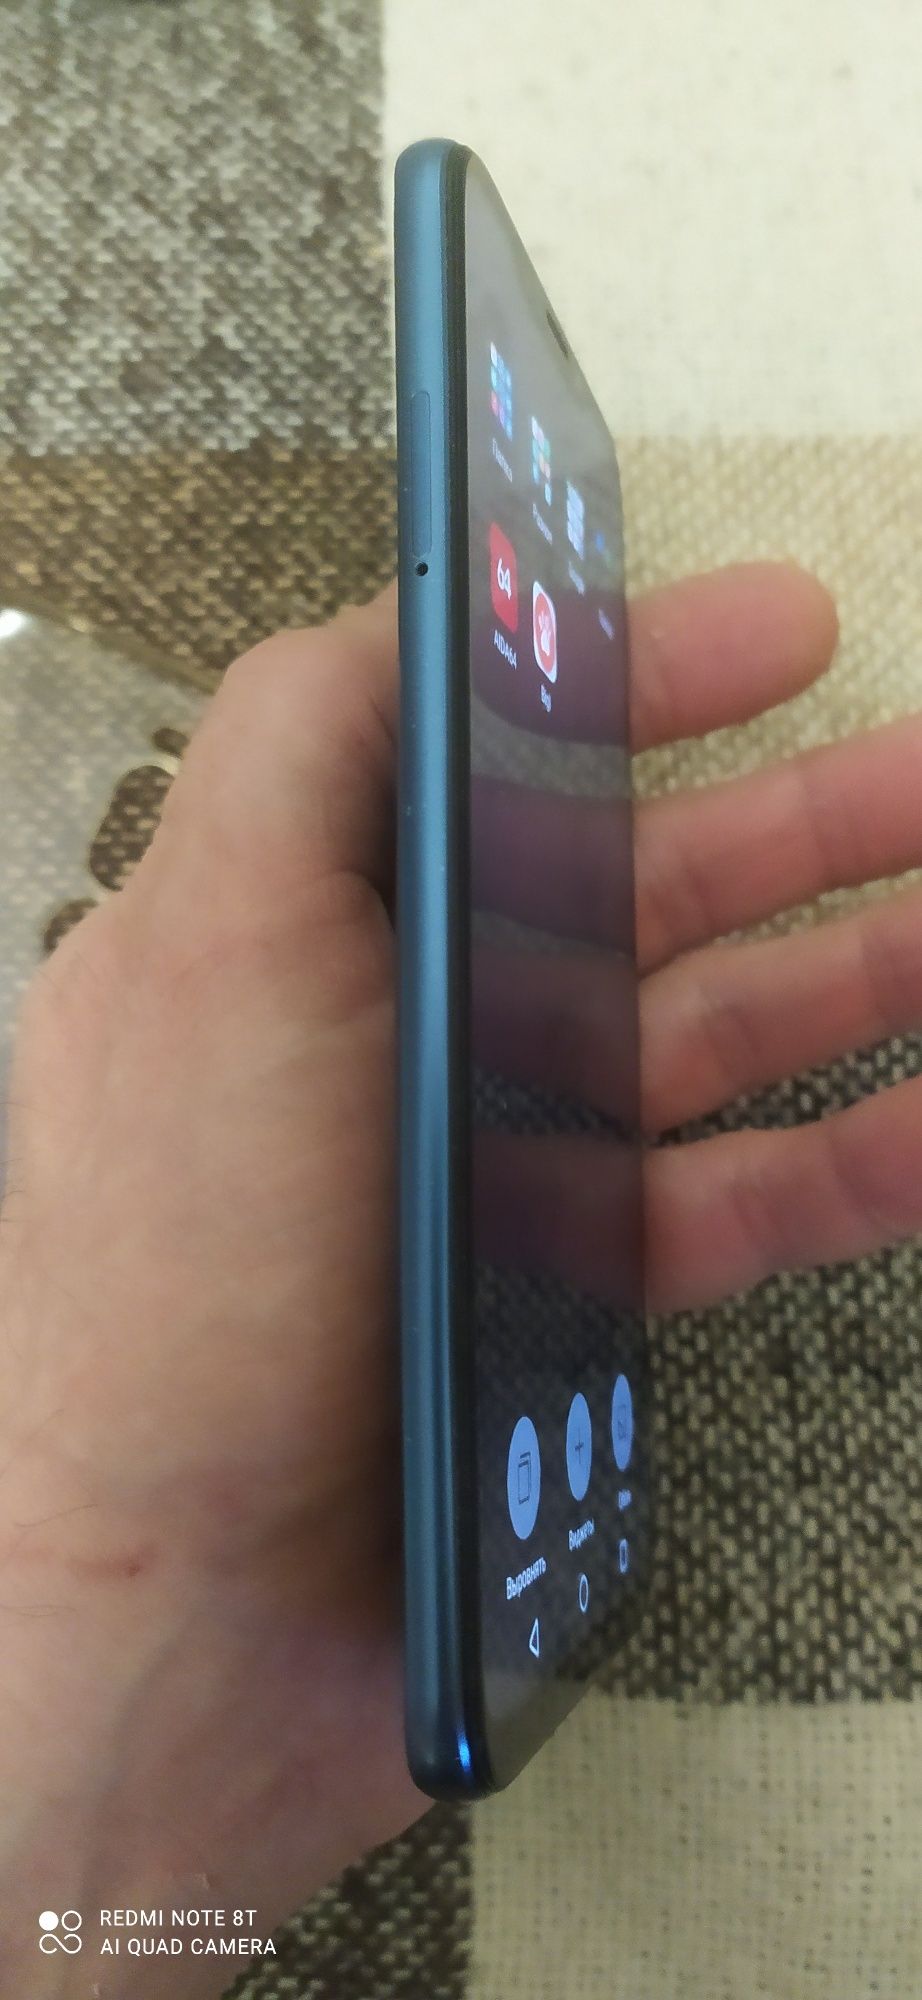 Продам Meizu 8x игровой телефон.